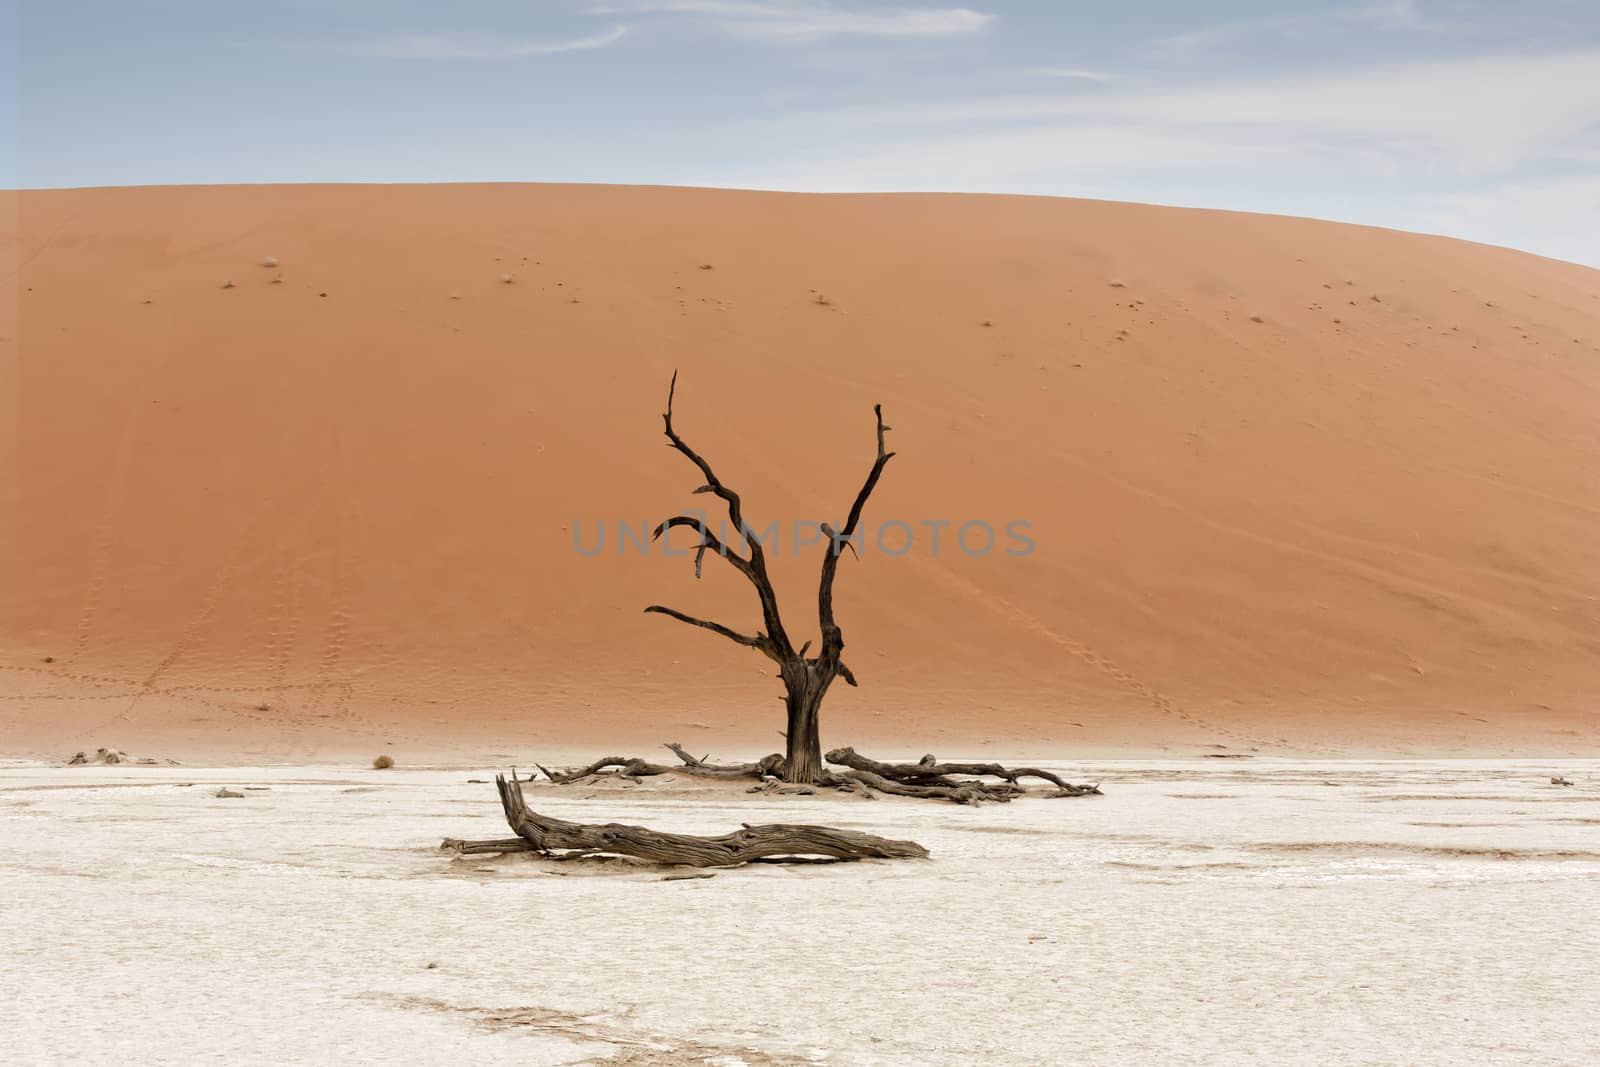 Desert Namib dead tree, Namibia, Sossusvlei location